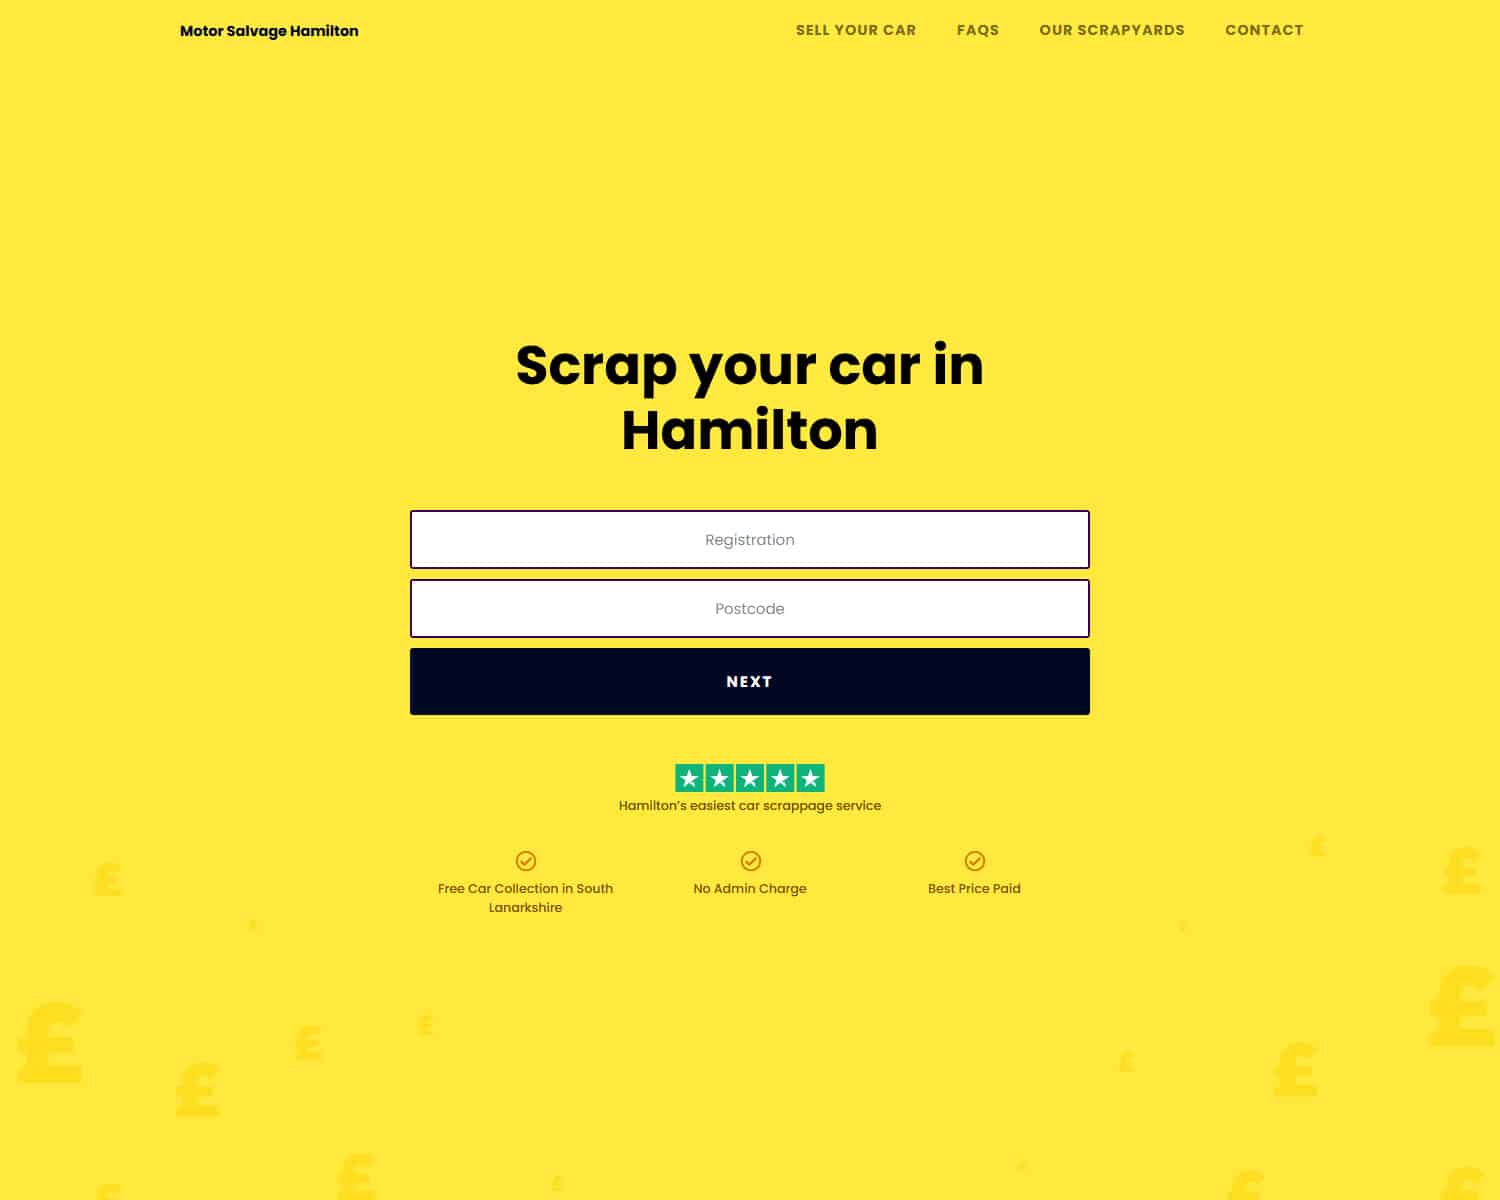 Landing page design for motoring website